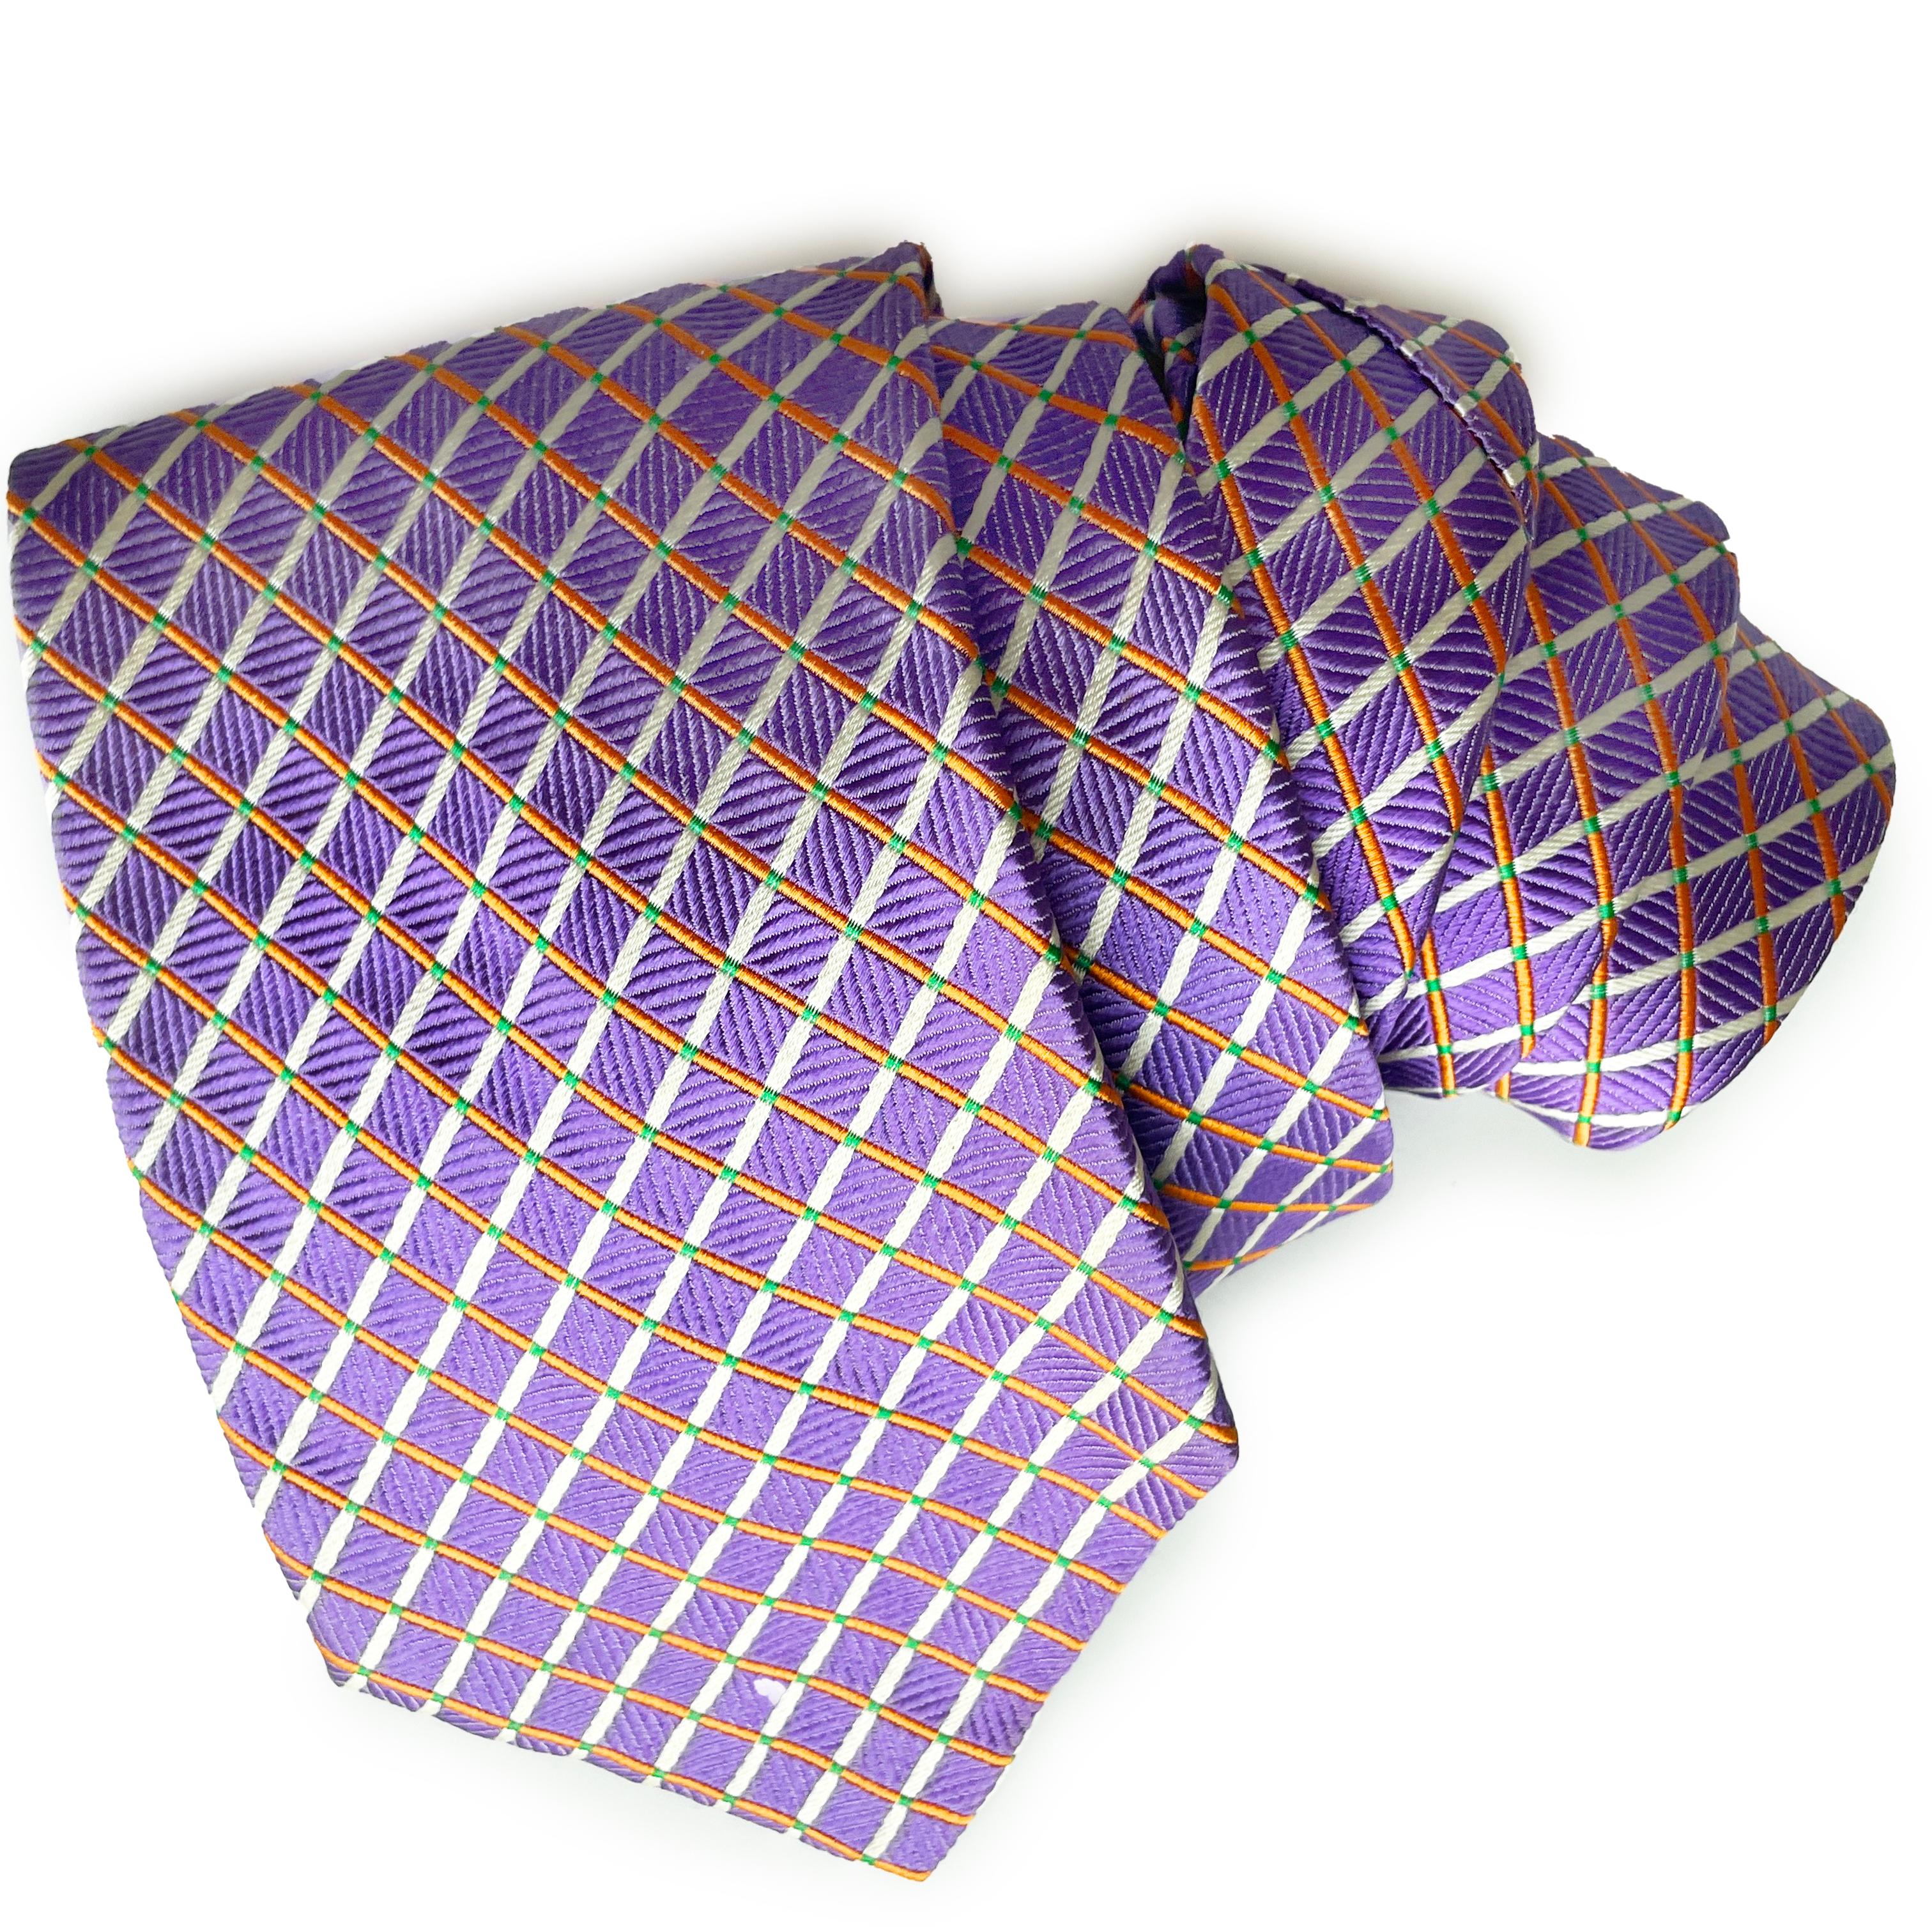 Cravate d'occasion en soie de Versace, probablement réalisée dans les années 2000.  Confectionné en soie, il présente un luxueux motif géométrique dans des tons de blanc et de melon sur un fond texturé de couleur lilas.

Parfait pour les amateurs